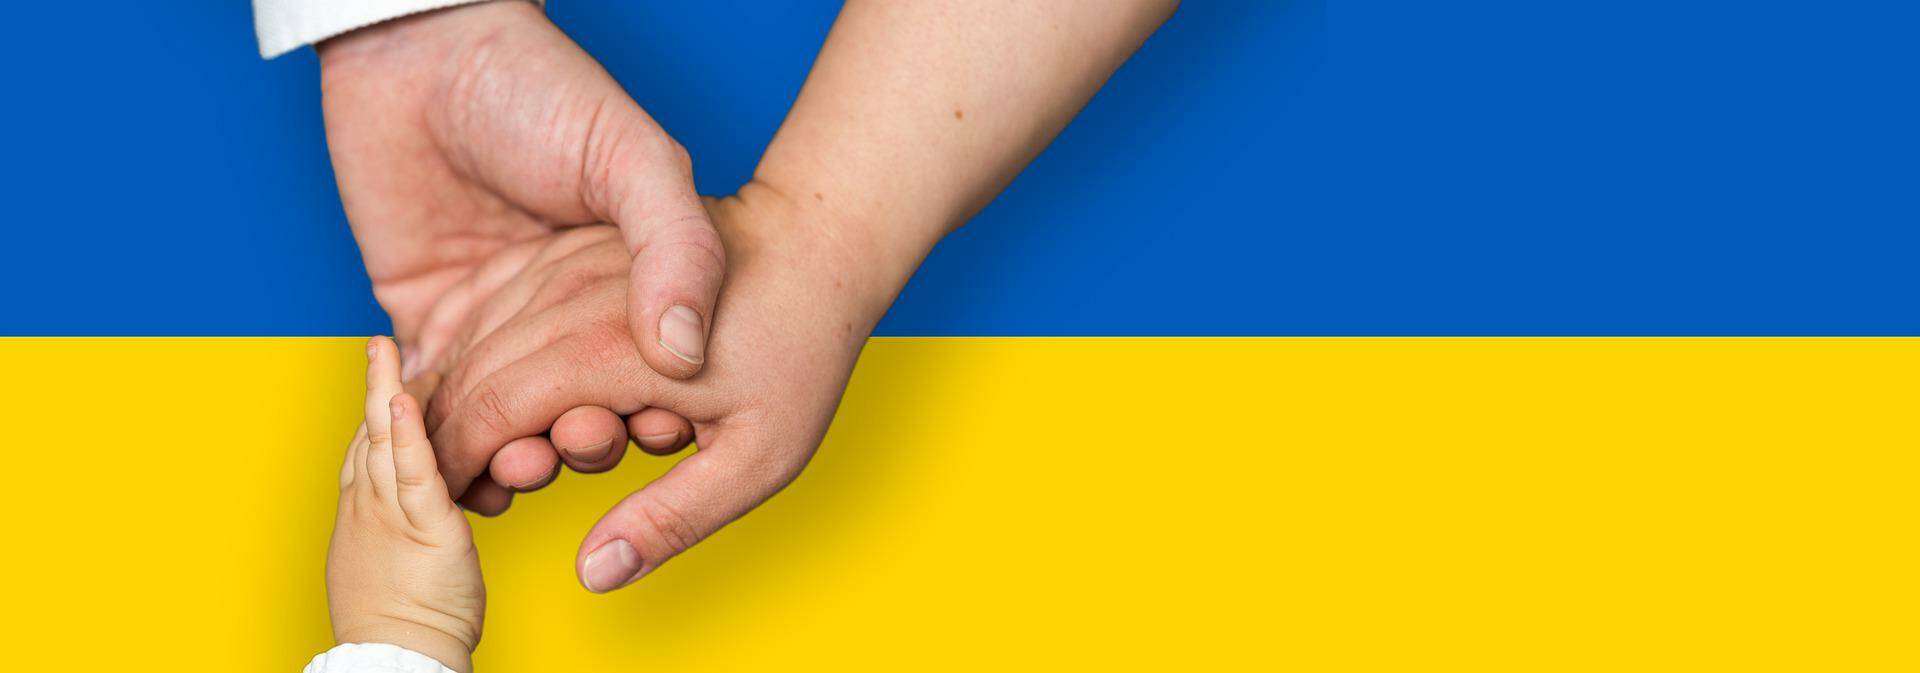 ucraina aiuto pixabay